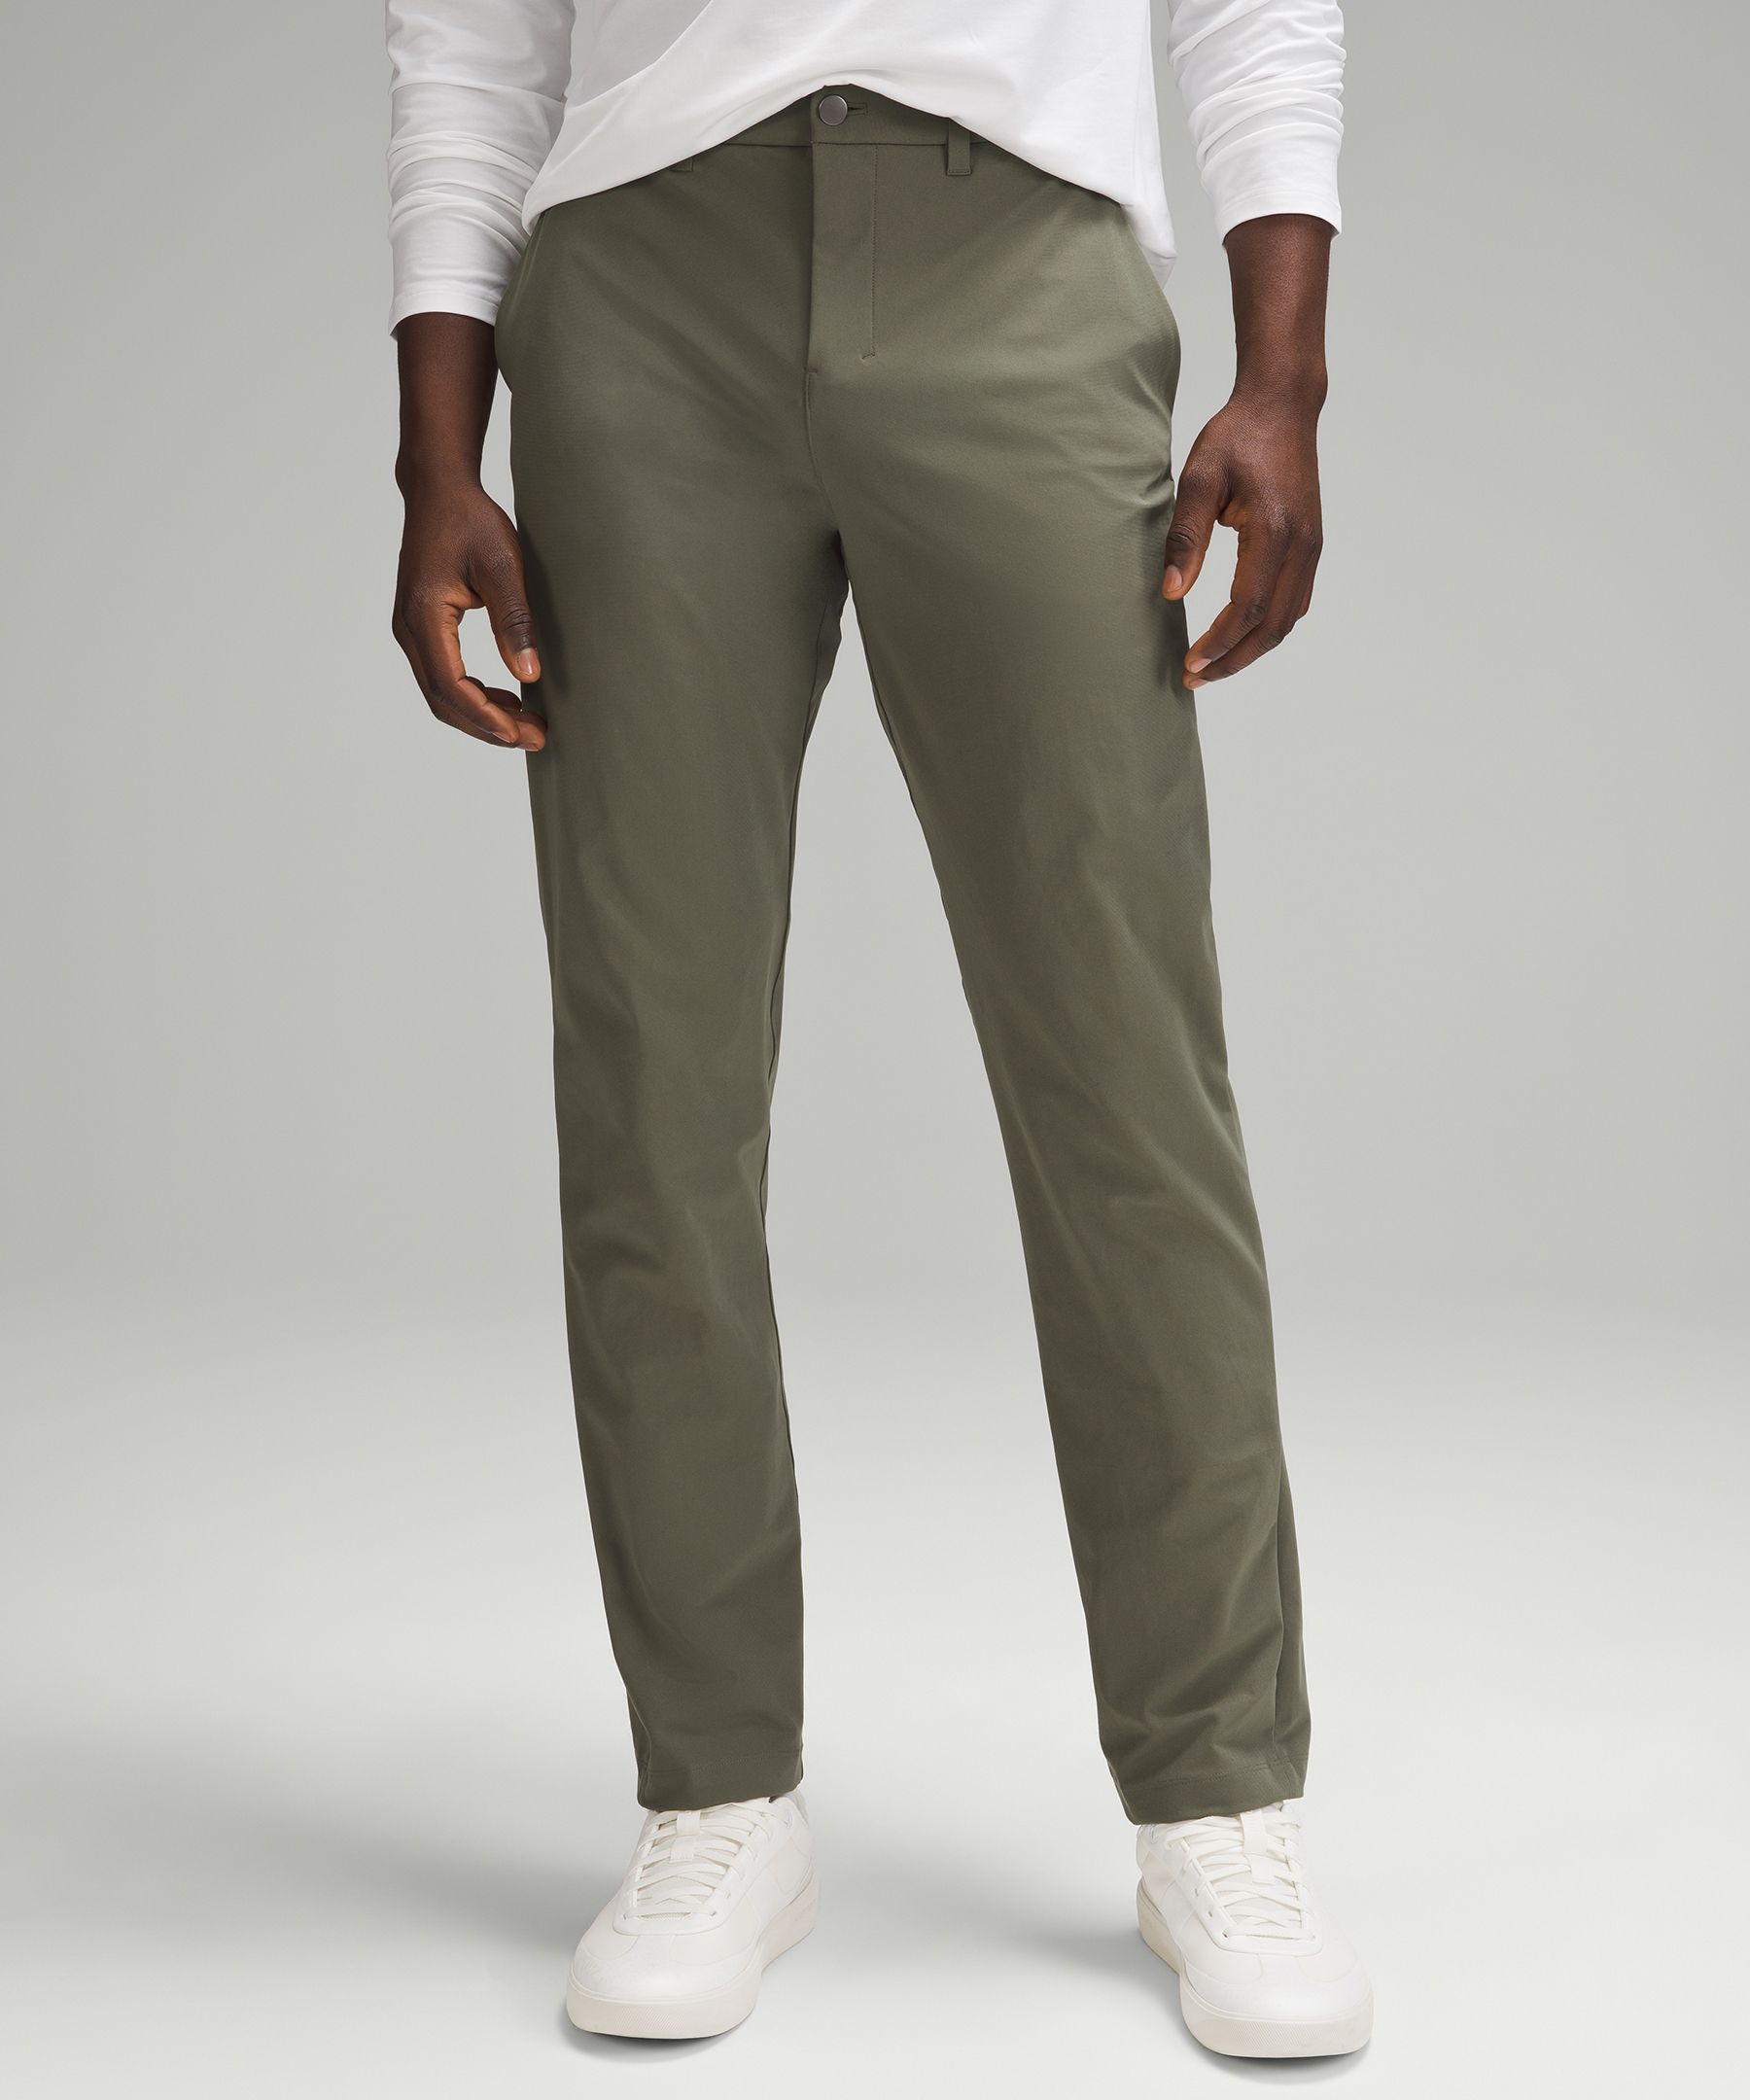 Lululemon Abc Classic-fit Trousers 30"l Warpstreme